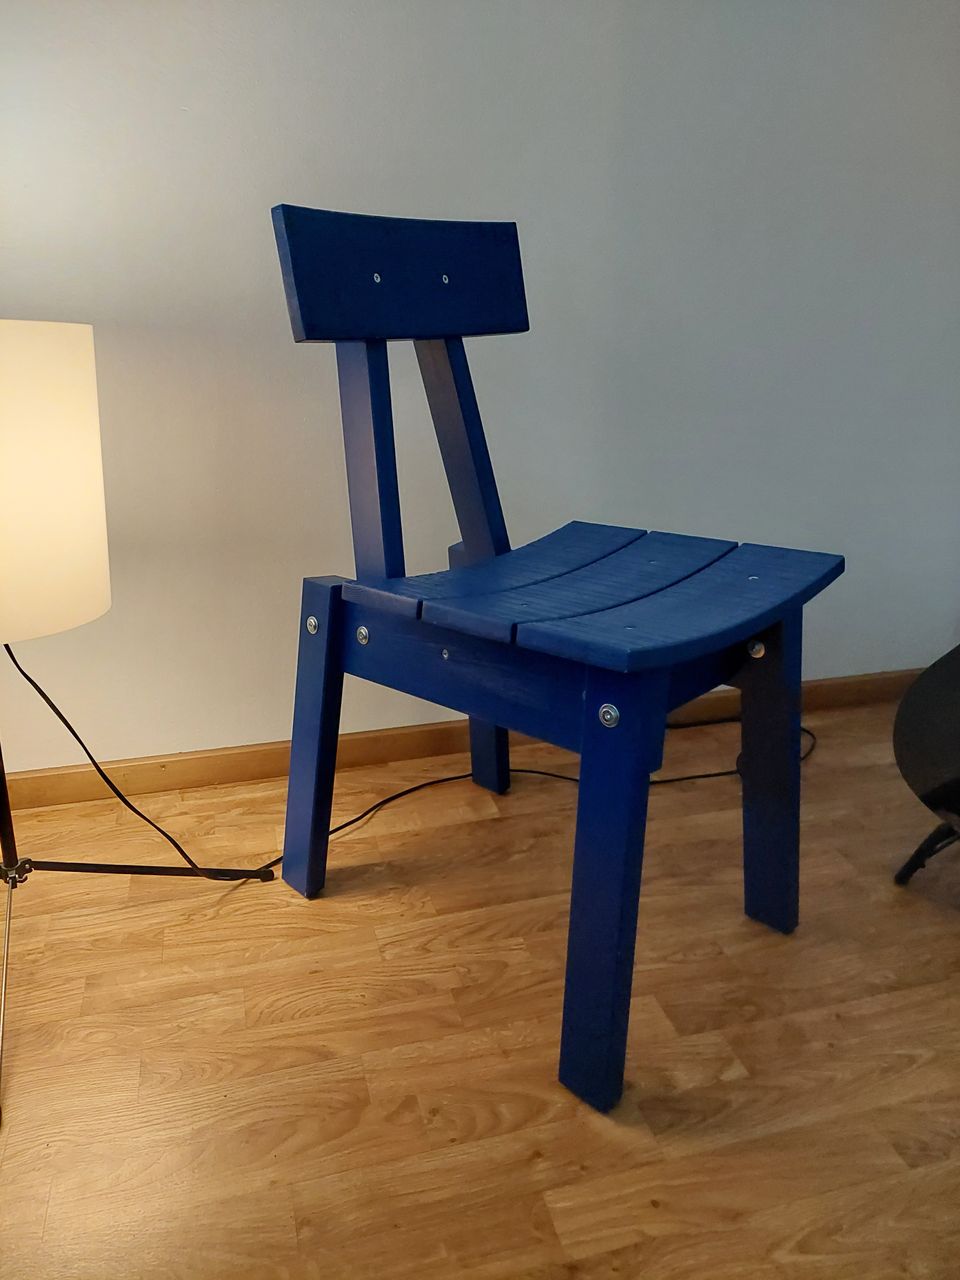 Ikea industriell sininen tuoli